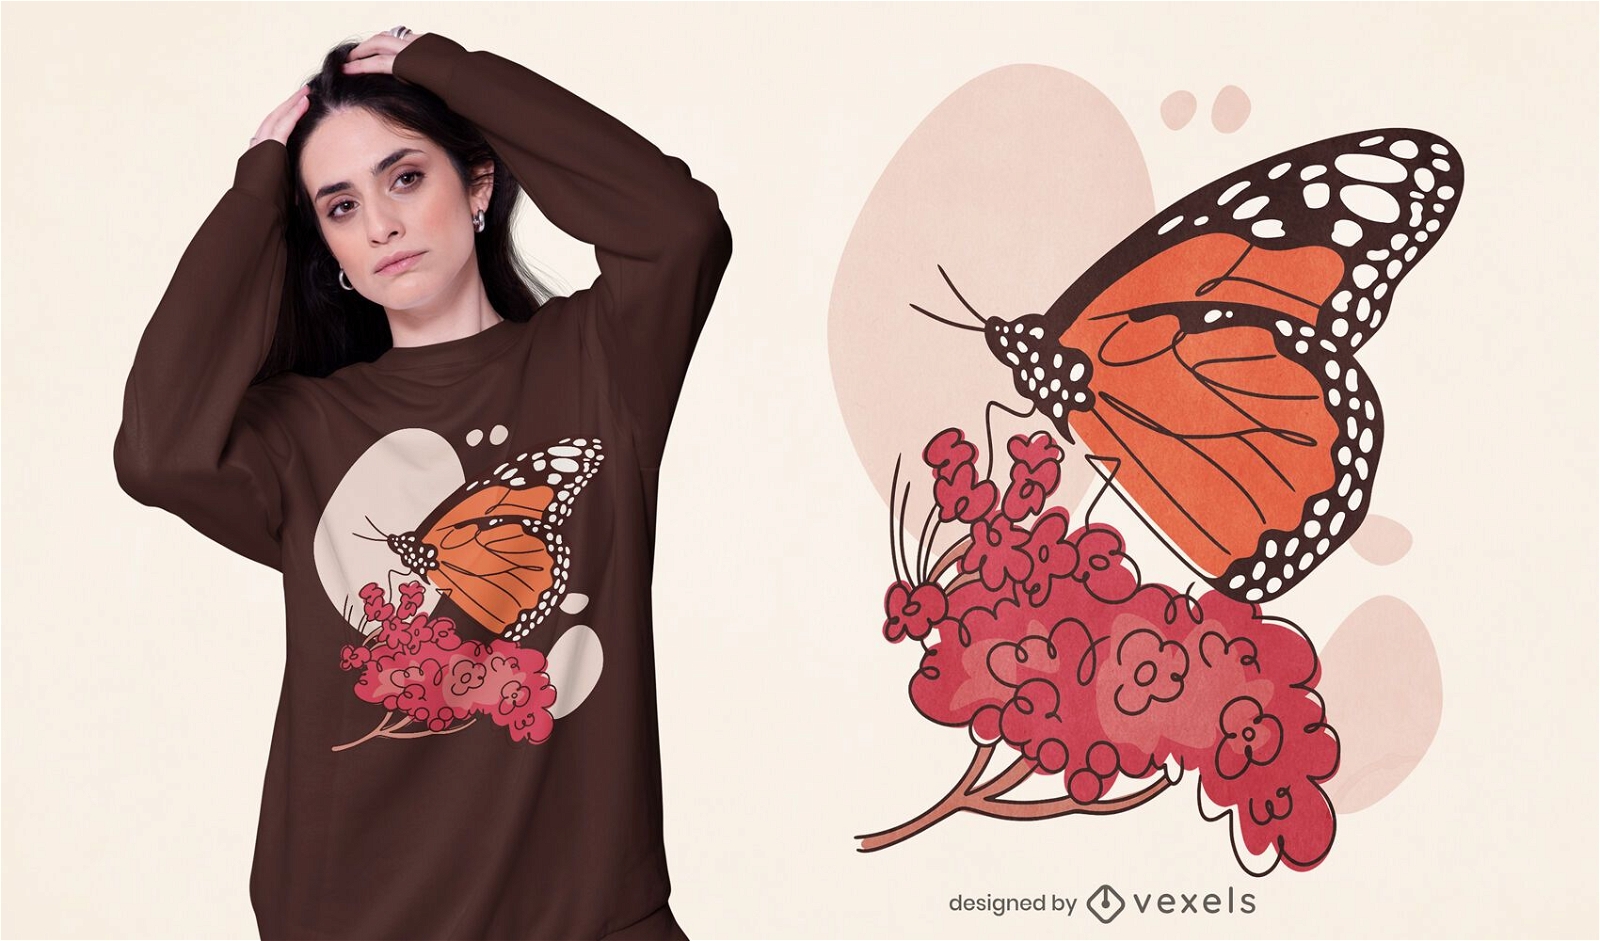 Monarch butterfly t-shirt design